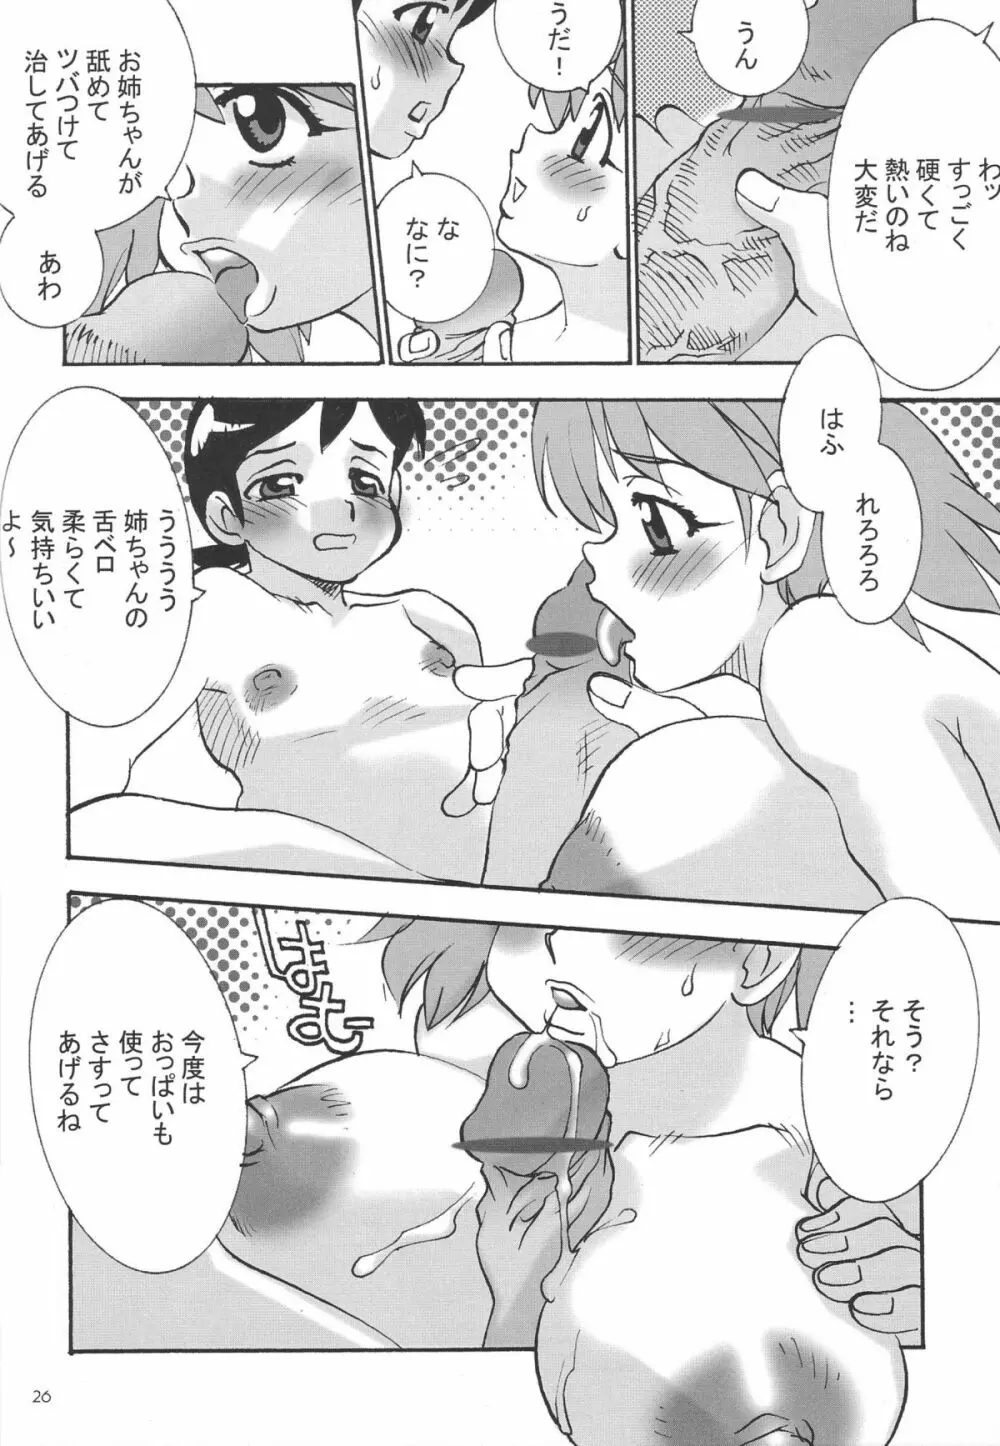 Shin Hanajuuryoku 10 28ページ